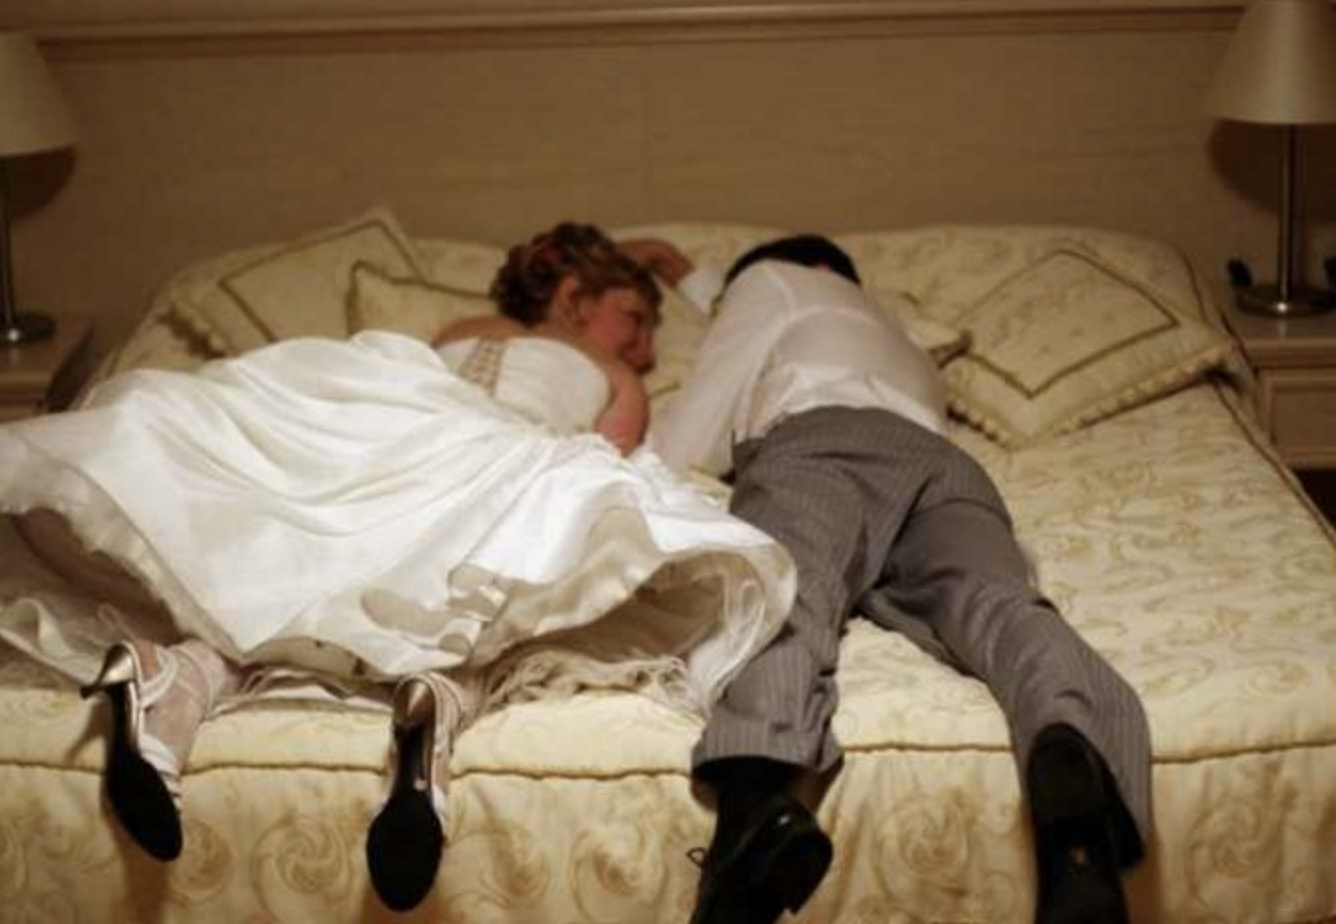 Frisch verheiratetes Paar auf einem Bett liegend | Quelle: Shutterstock